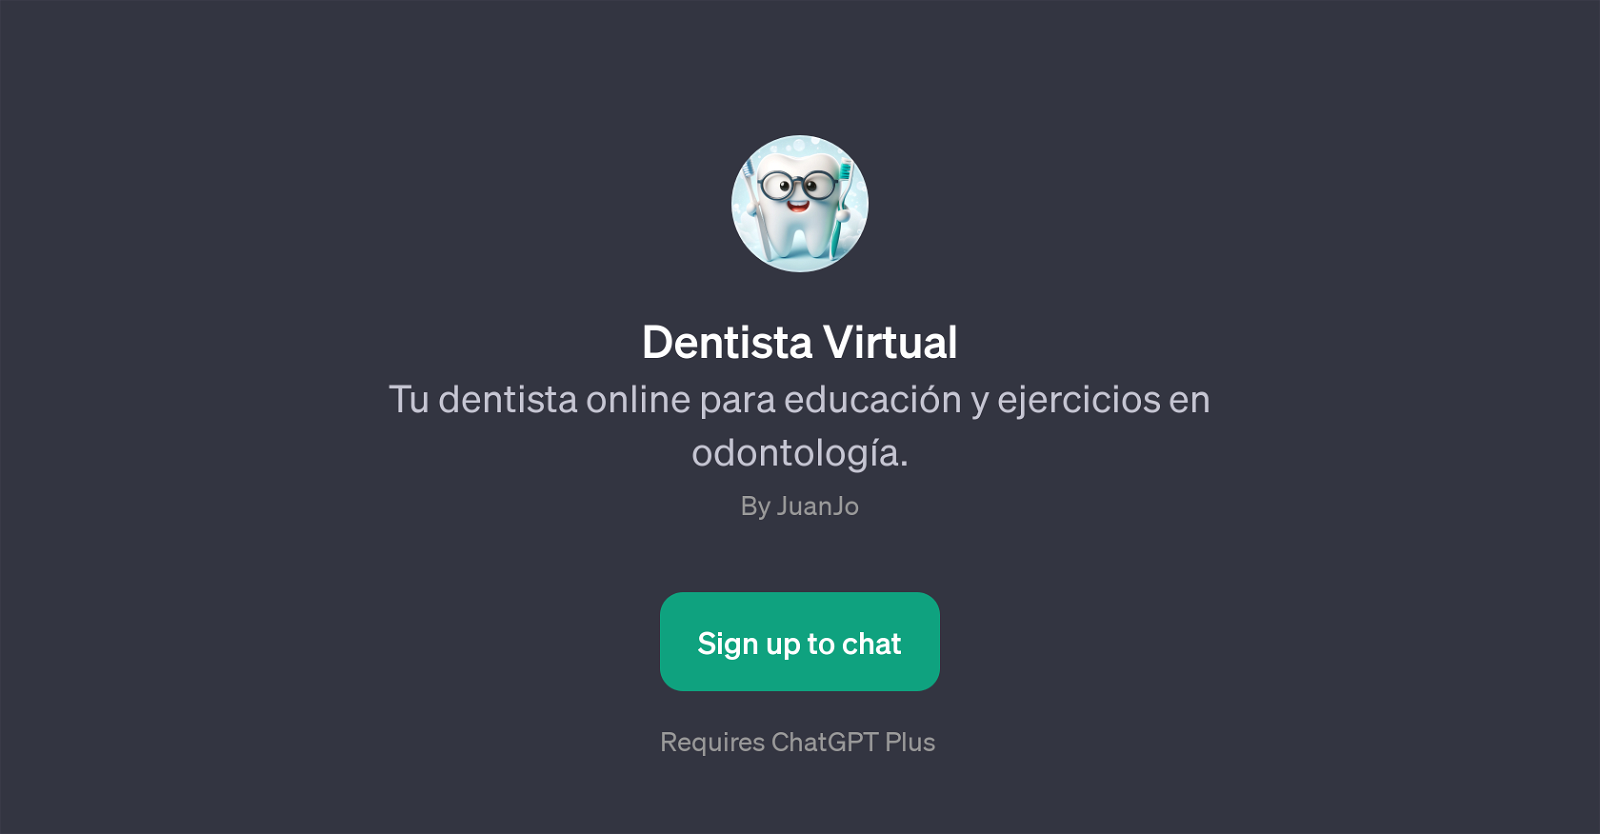 Dentista Virtual website